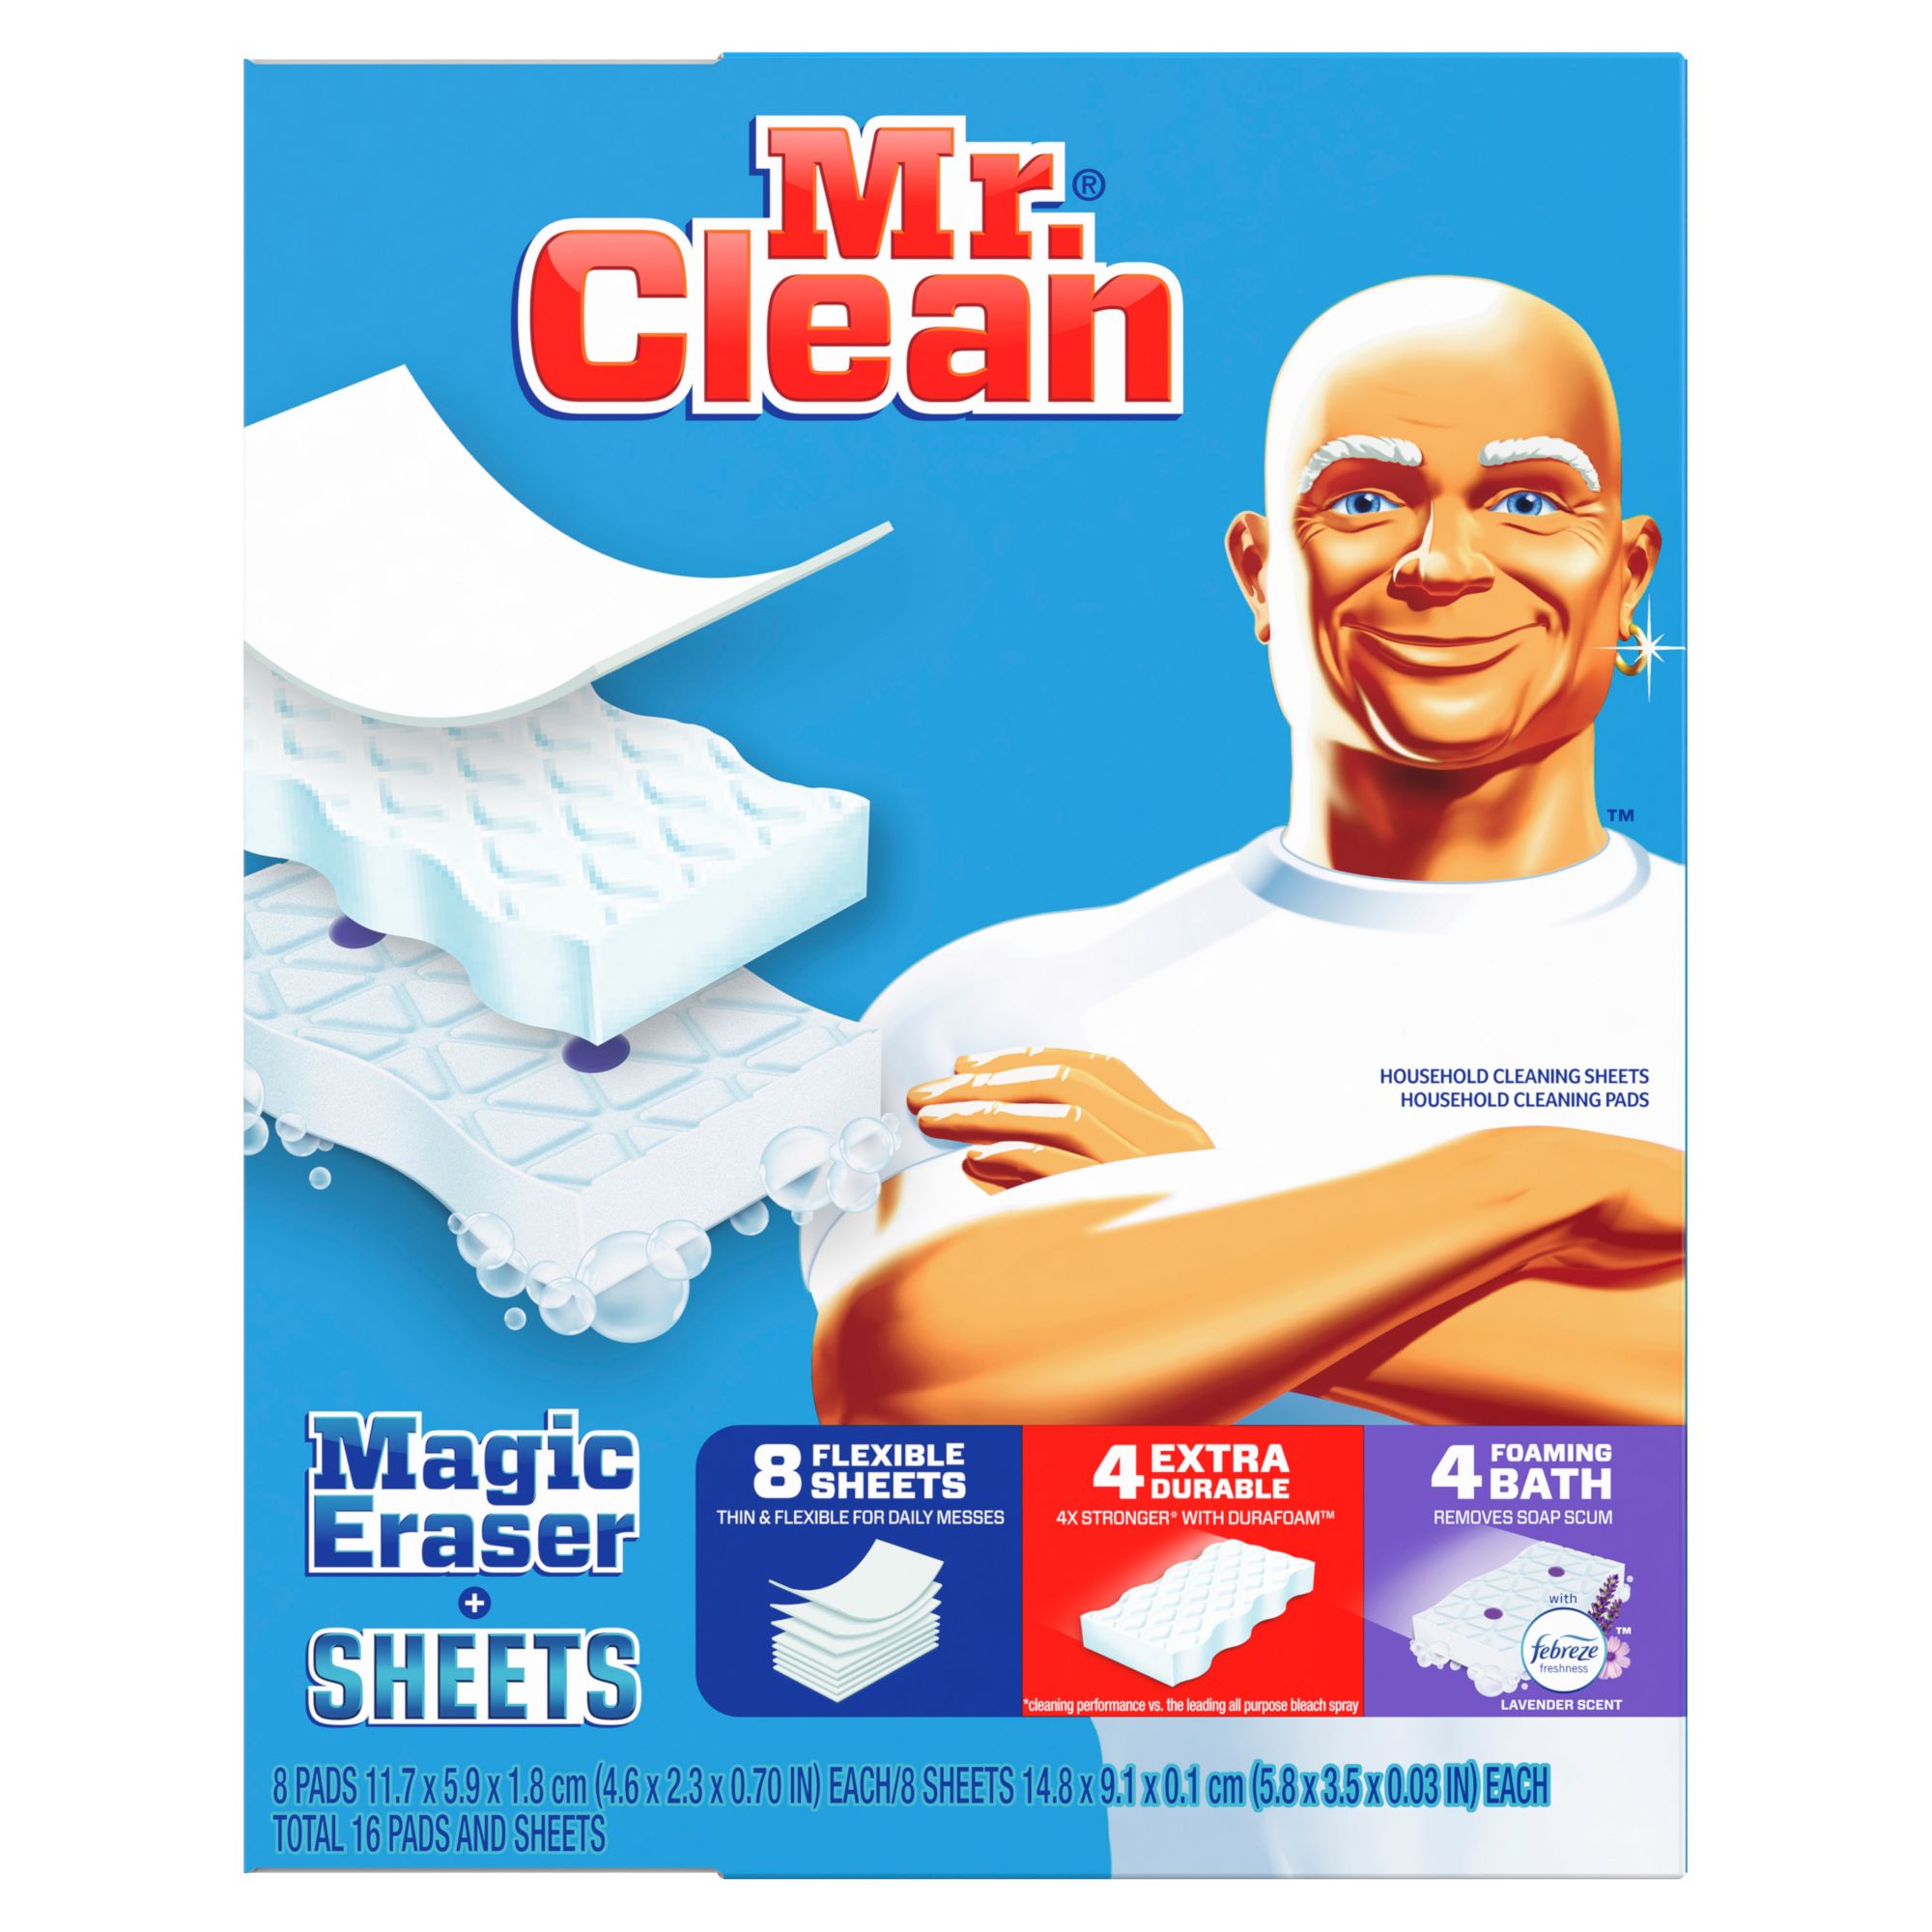 Bạn cần sự trợ giúp để làm sạch các vết bẩn cứng đầu trên tường hay sàn nhà? Hãy dùng tờ lau Mr. Clean Magic Eraser và bàn chải lau để giải quyết vấn đề này. Thật đơn giản và dễ dàng!